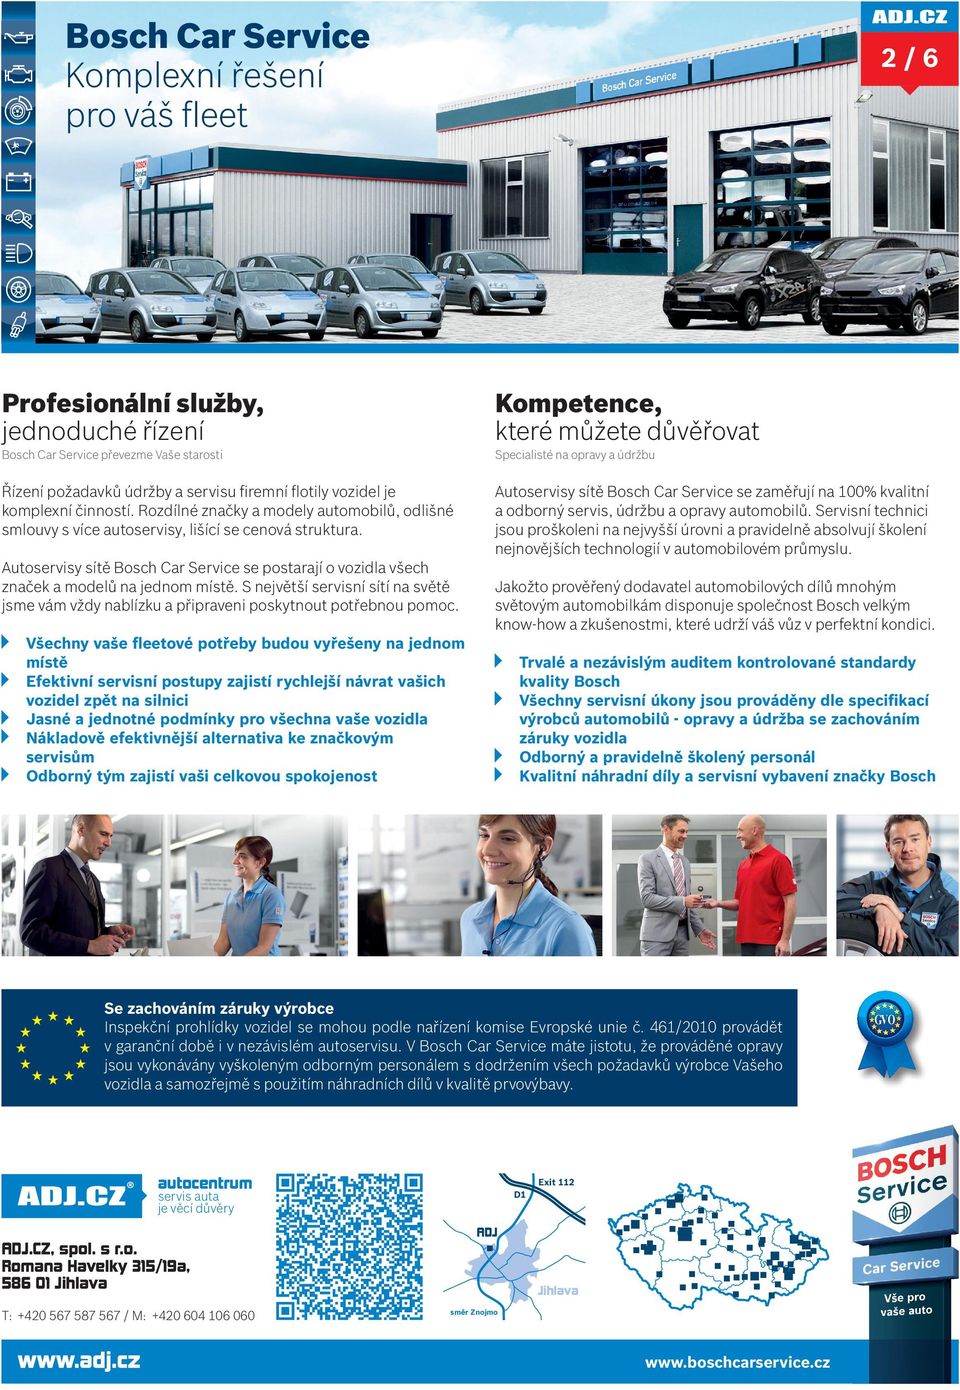 Autoservisy sítě Bosch Car Service se zaměřují na 100% kvalitní a odborný servis, údržbu a opravy automobilů.